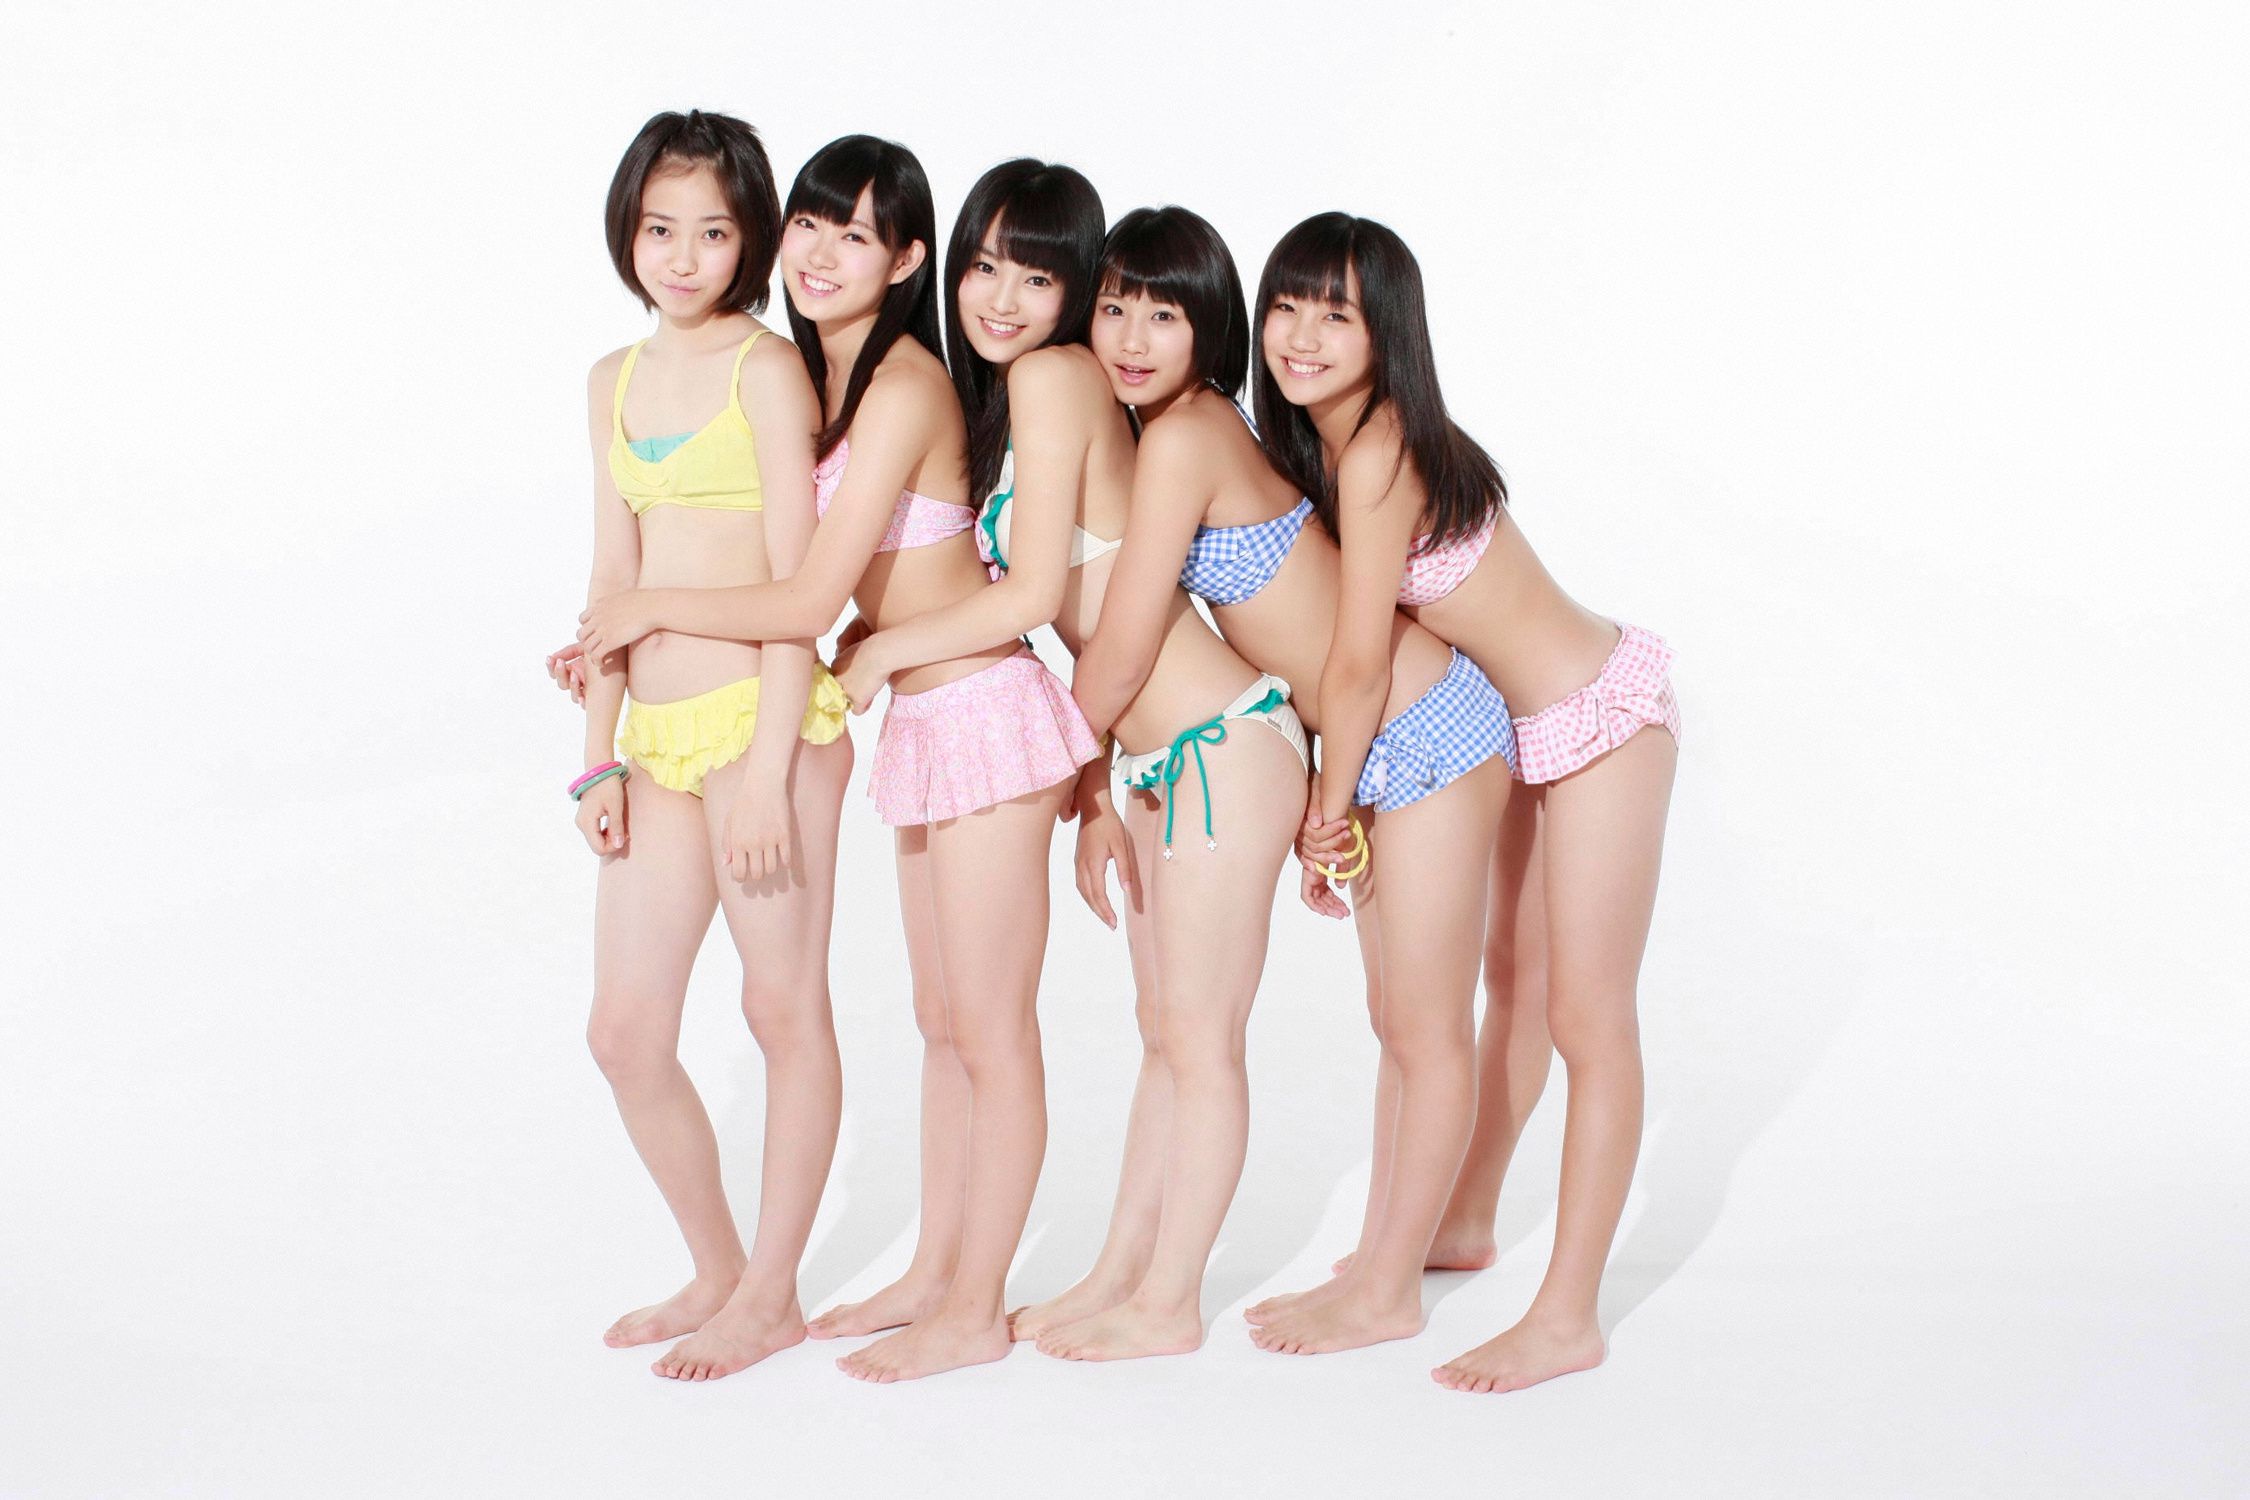 Japanese bikini challenge